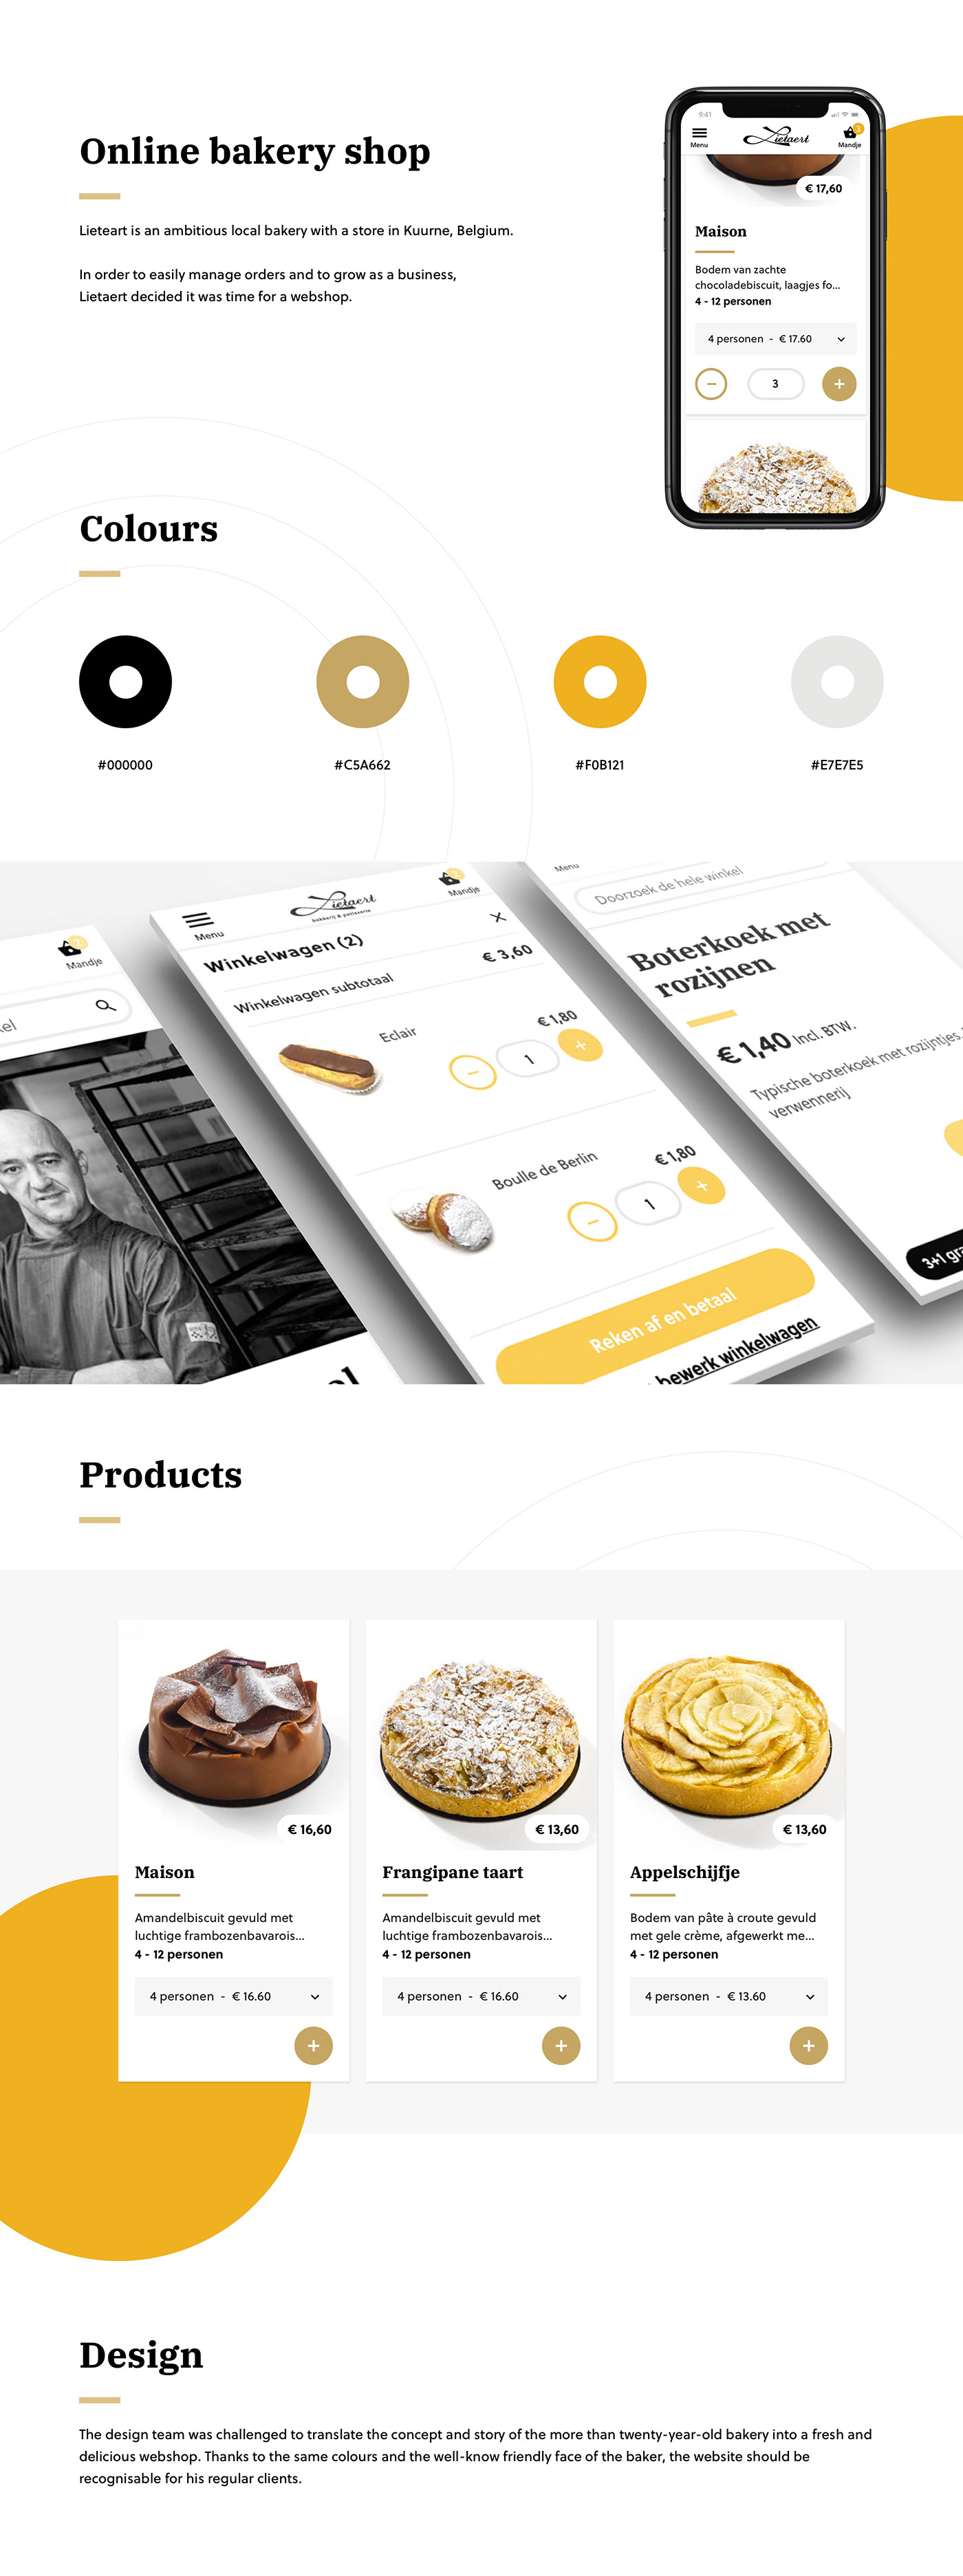 Lietaert bakery webshop design showcase